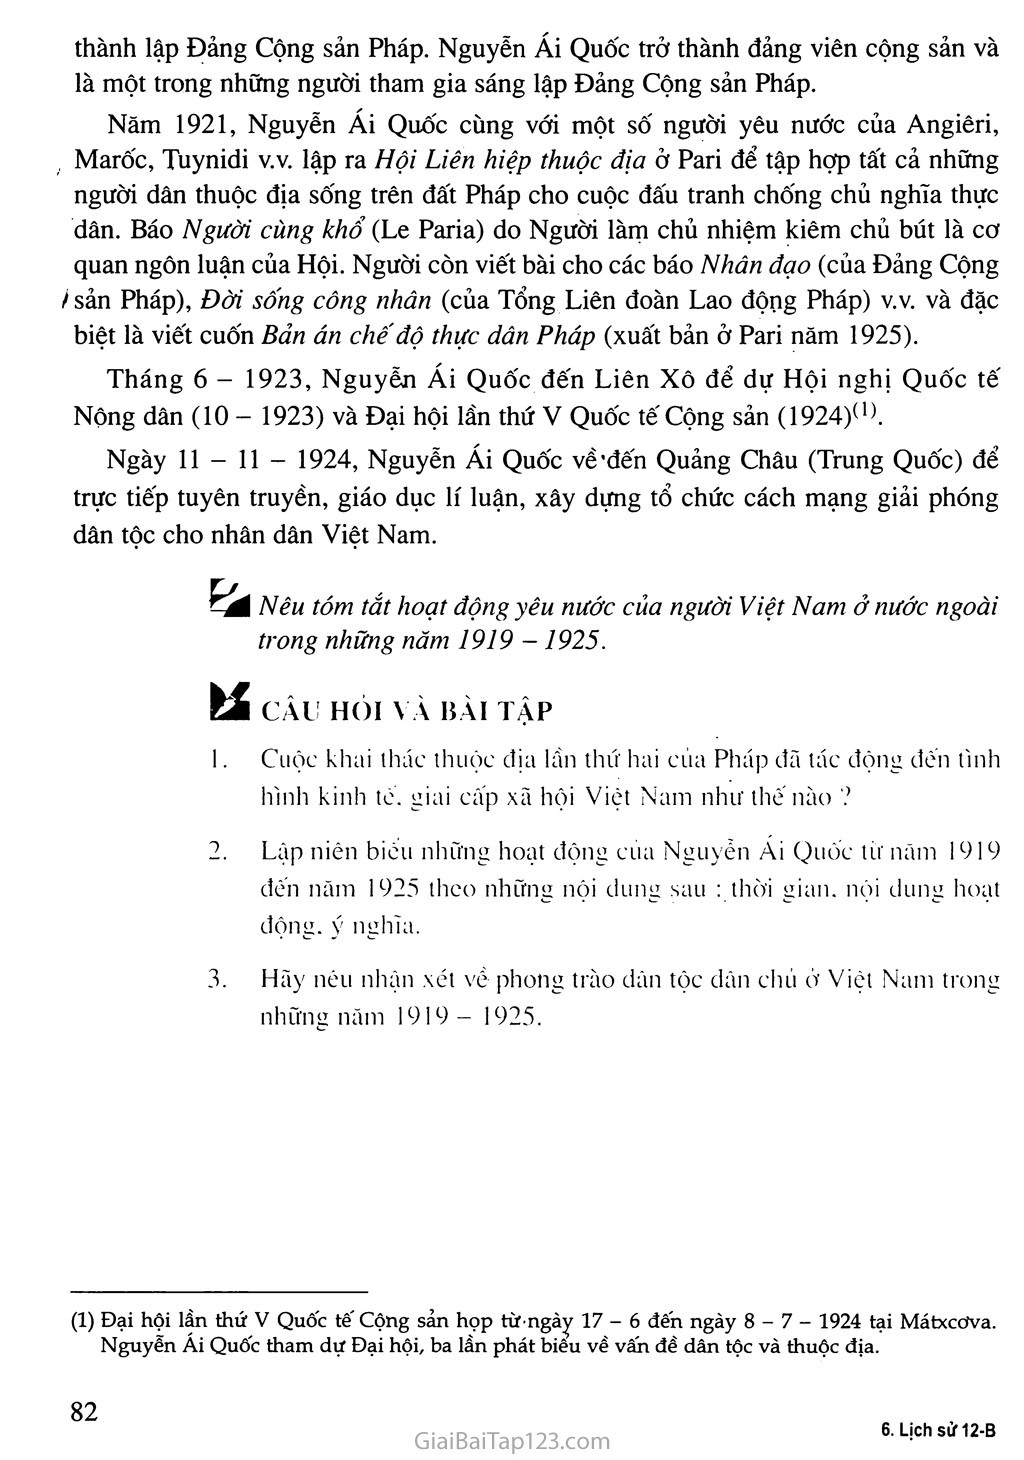 Bài 12. Phong trào dân tộc dân chủ ở Việt Nam từ năm 1919 đến năm 1925 trang 7